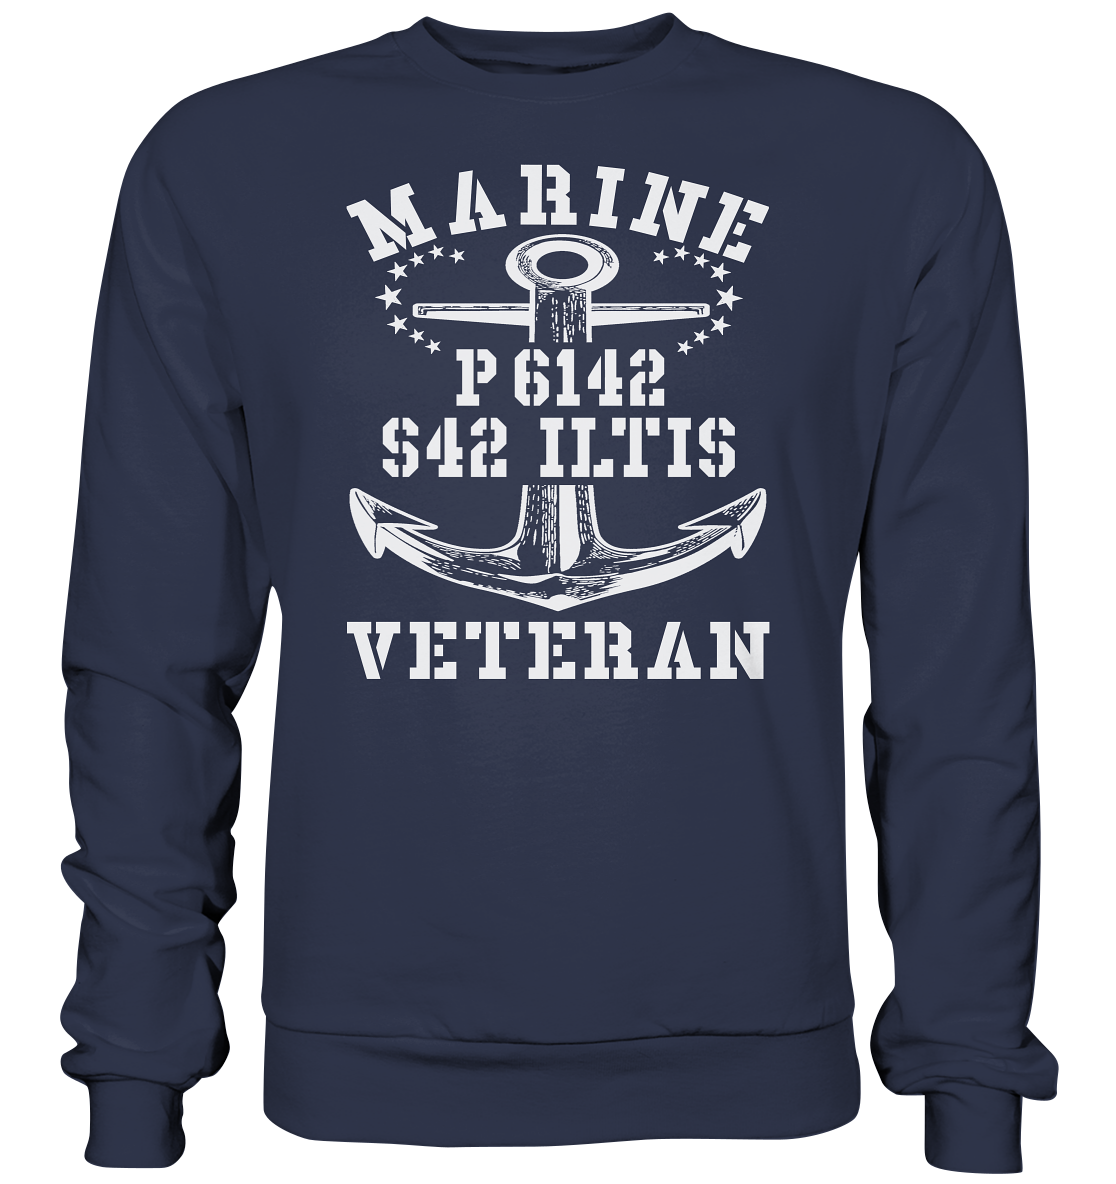 P6142 S42 ILTIS Marine Veteran - Premium Sweatshirt